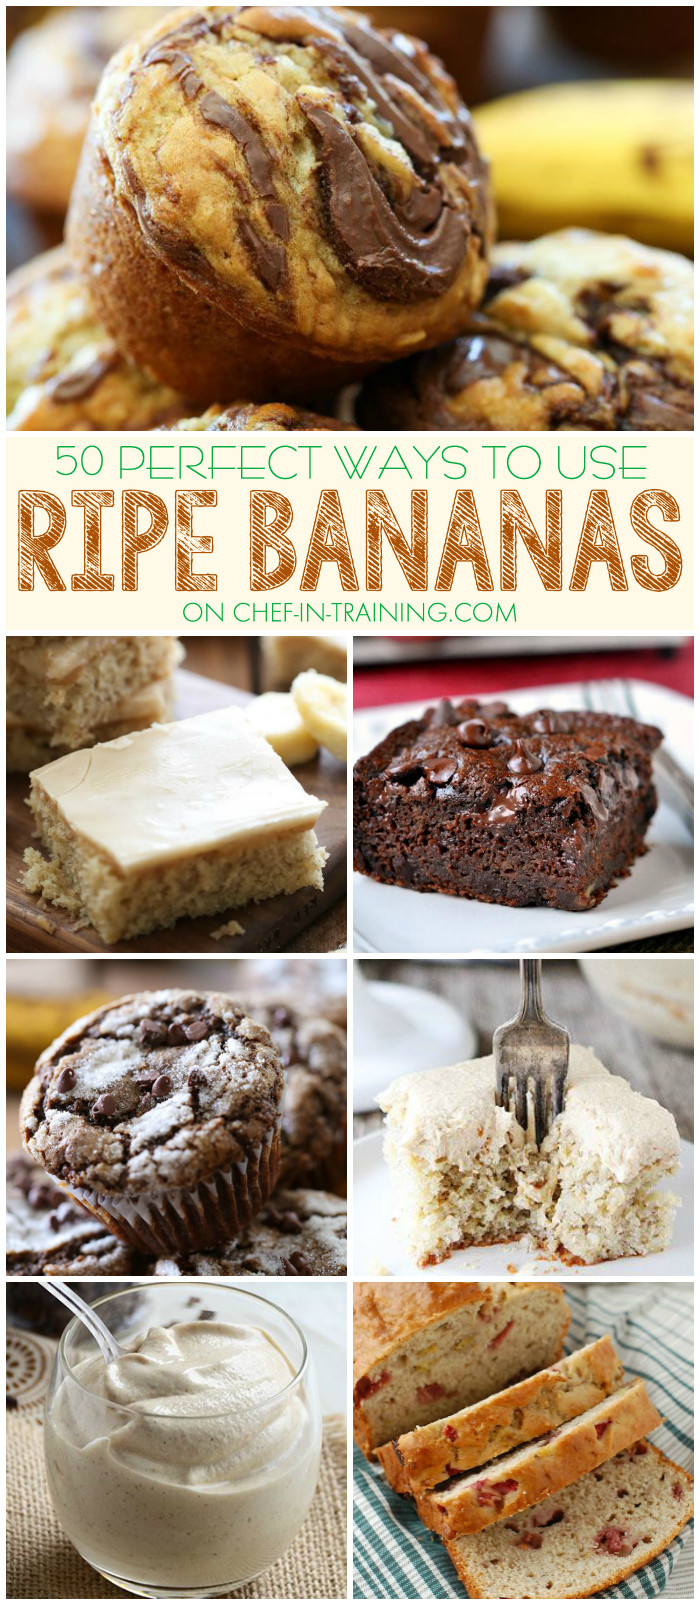 Recipes For Ripe Bananas Other Than Banana Bread
 ripe banana recipes